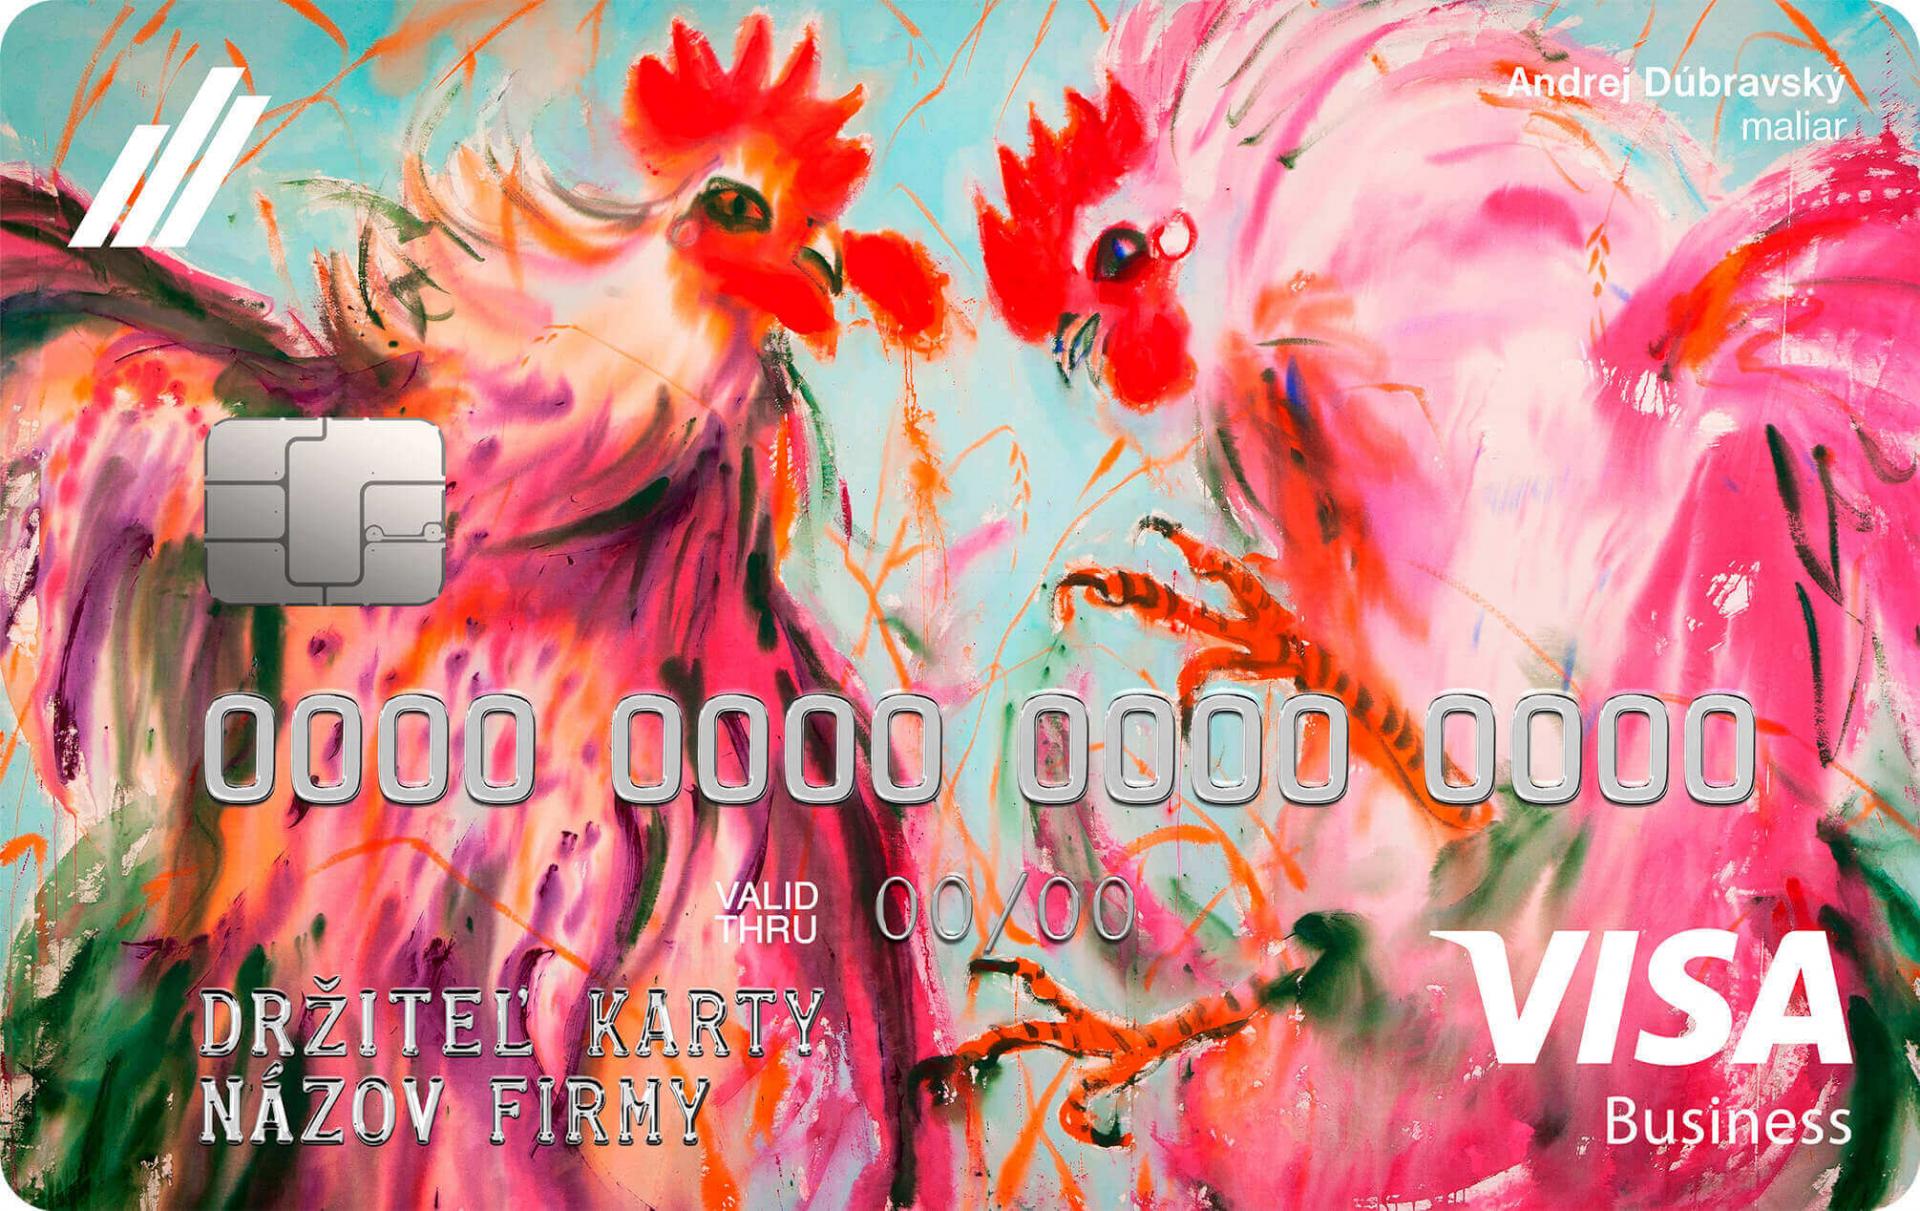 Nová firemná kreditná karta VISA štandard odkazuje na dielo Dva kohúty v poli od Andreja Dúbravského